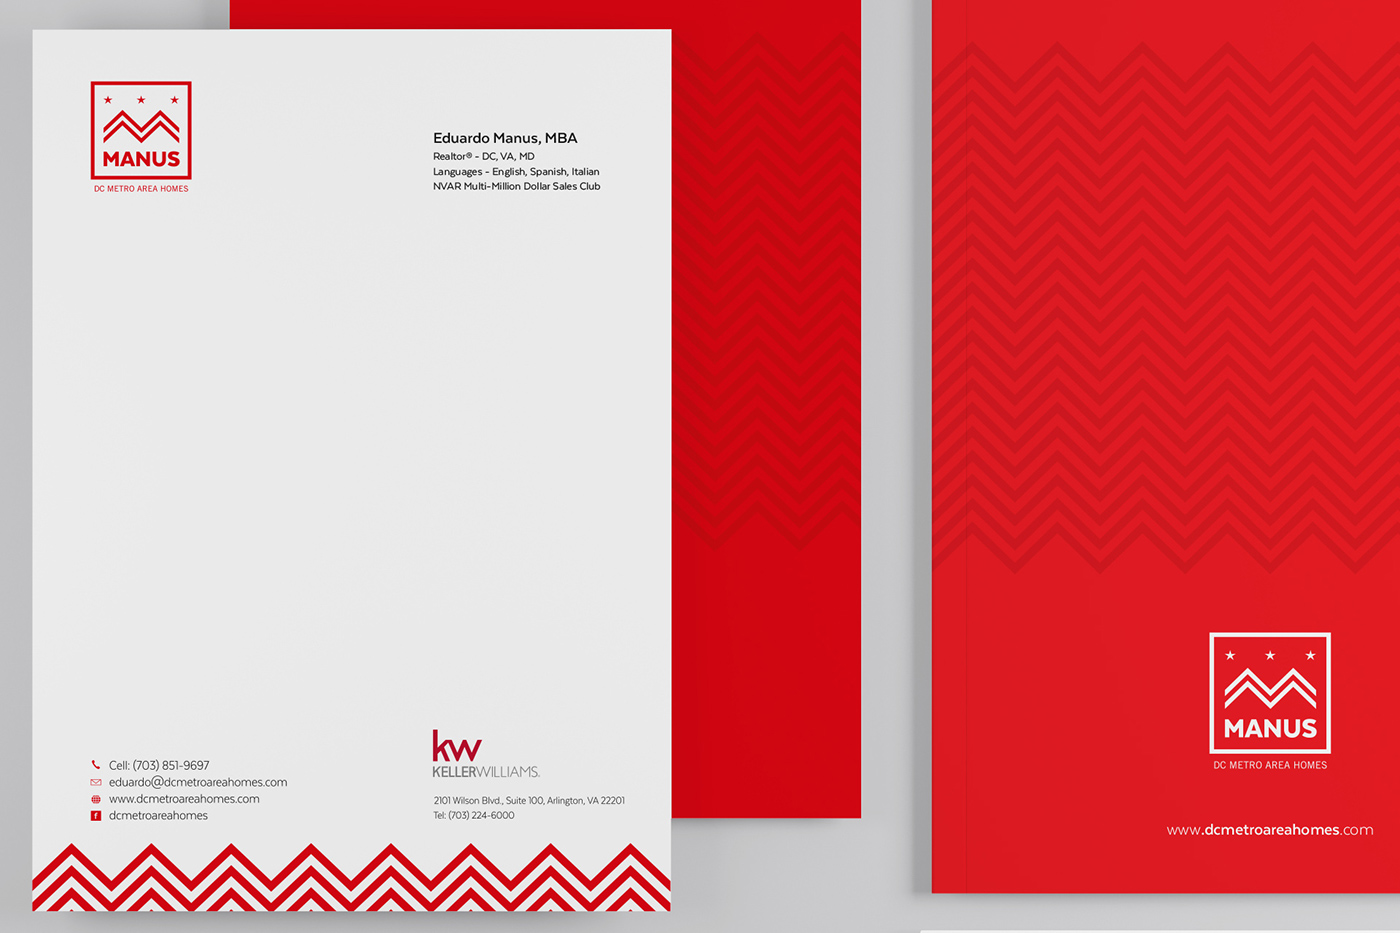 Diseño editorial diseño grafico Identidad Corporativa identity logos print